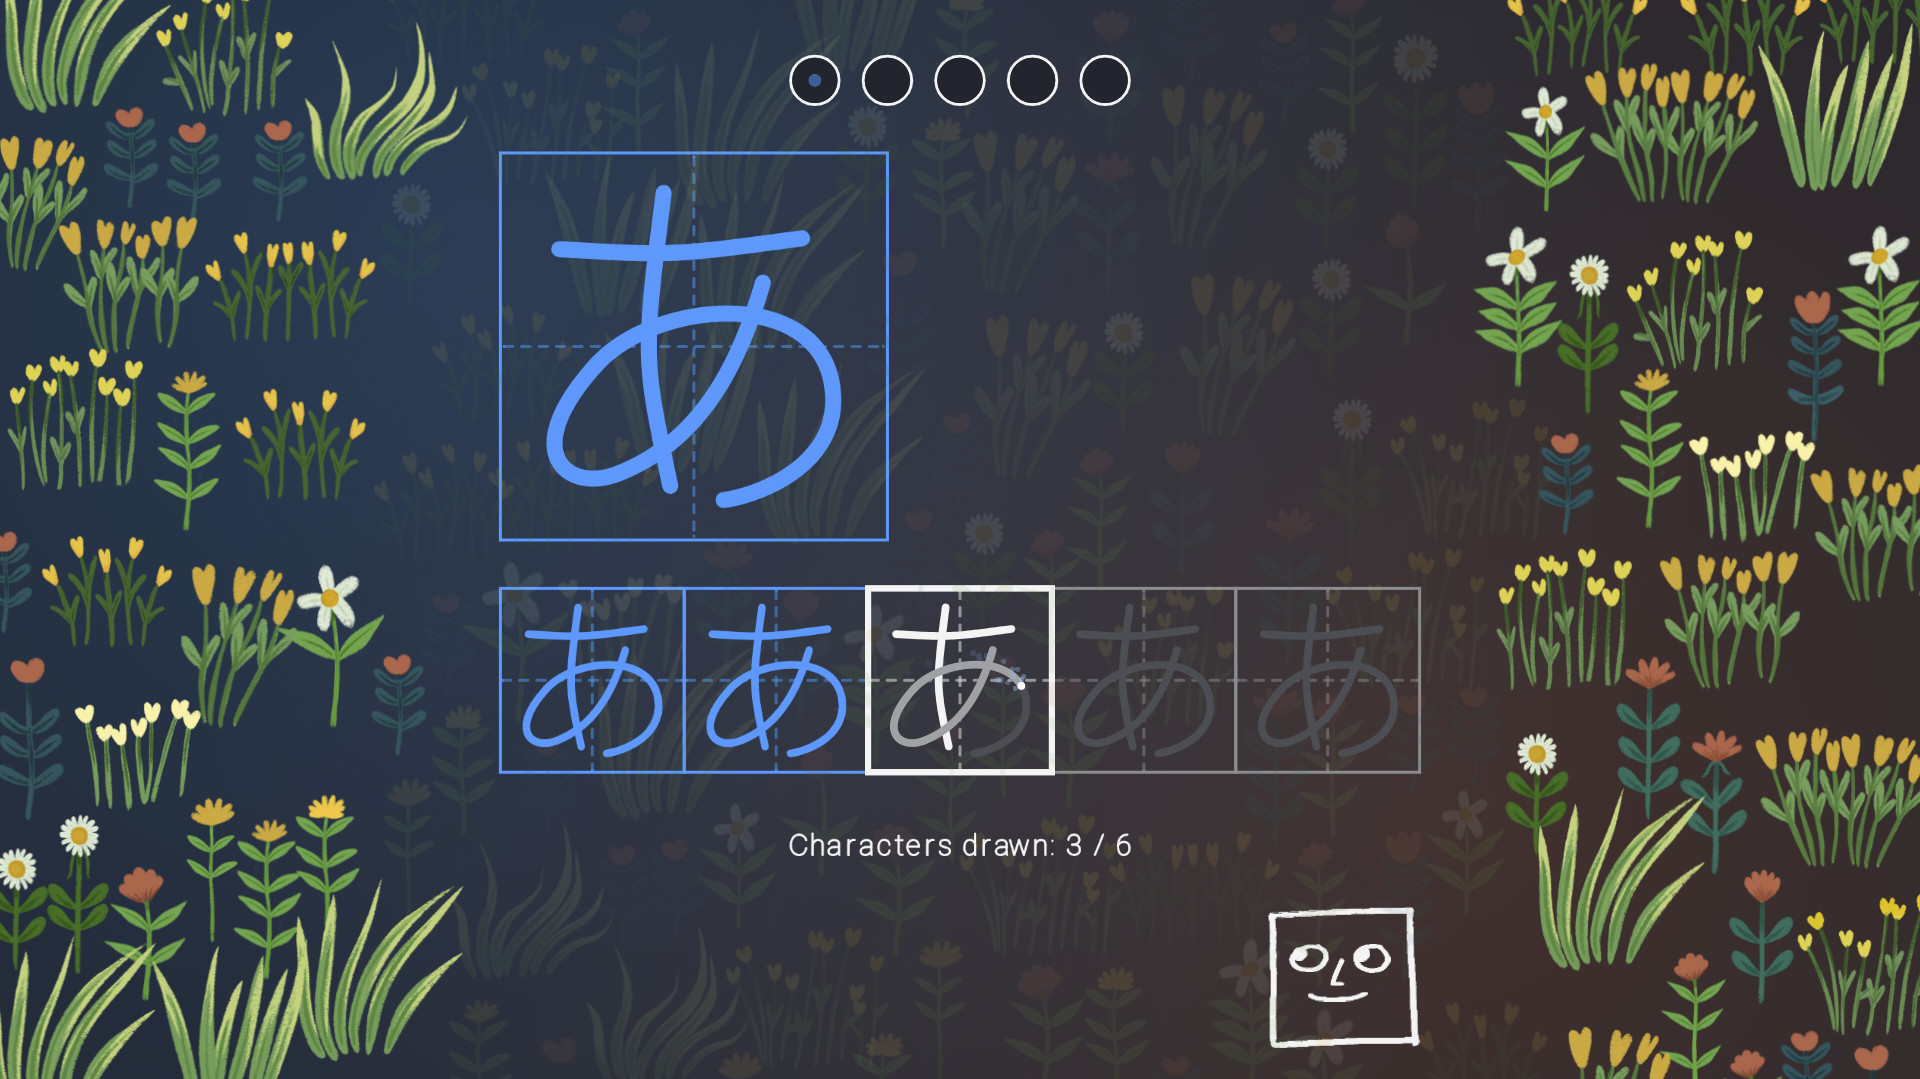 You Can Kana - Learn Japanese Hiragana & Katakana Steam CD Key